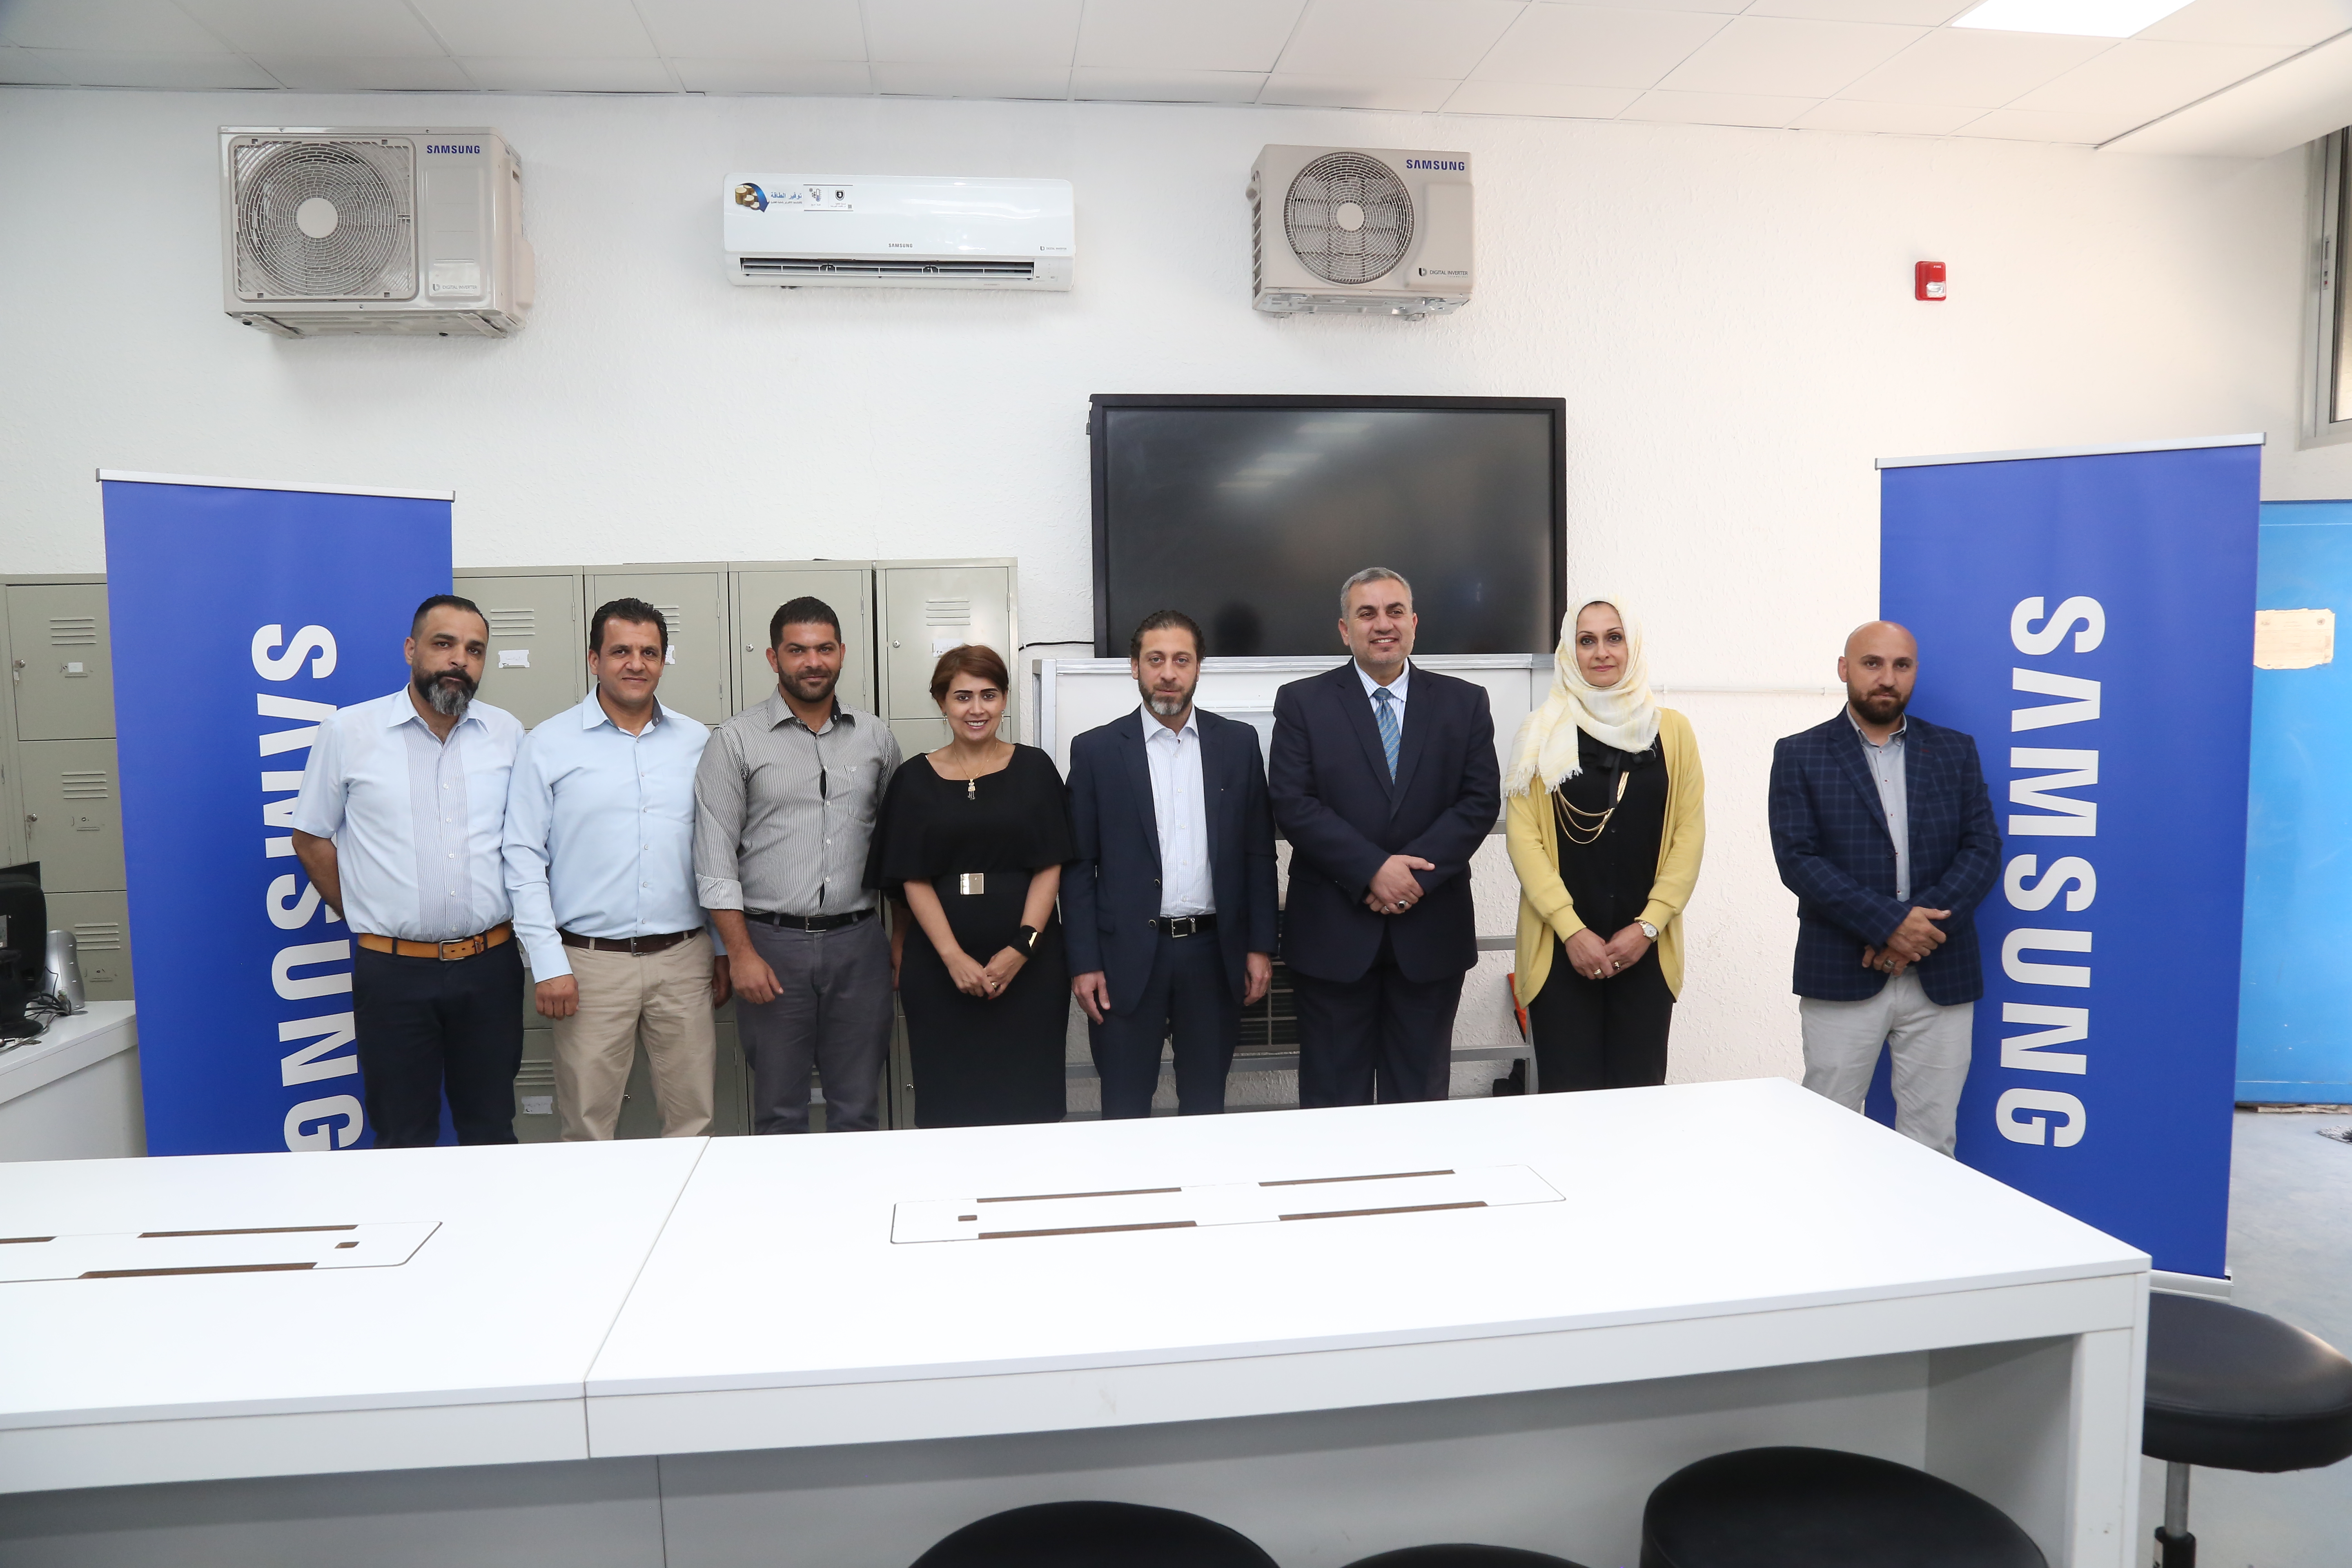 &سامسونج إلكترونيكس& المشرق العربي تختتم دورة تدريب مهني في مختبر سامسونج لتقنيات التكييف